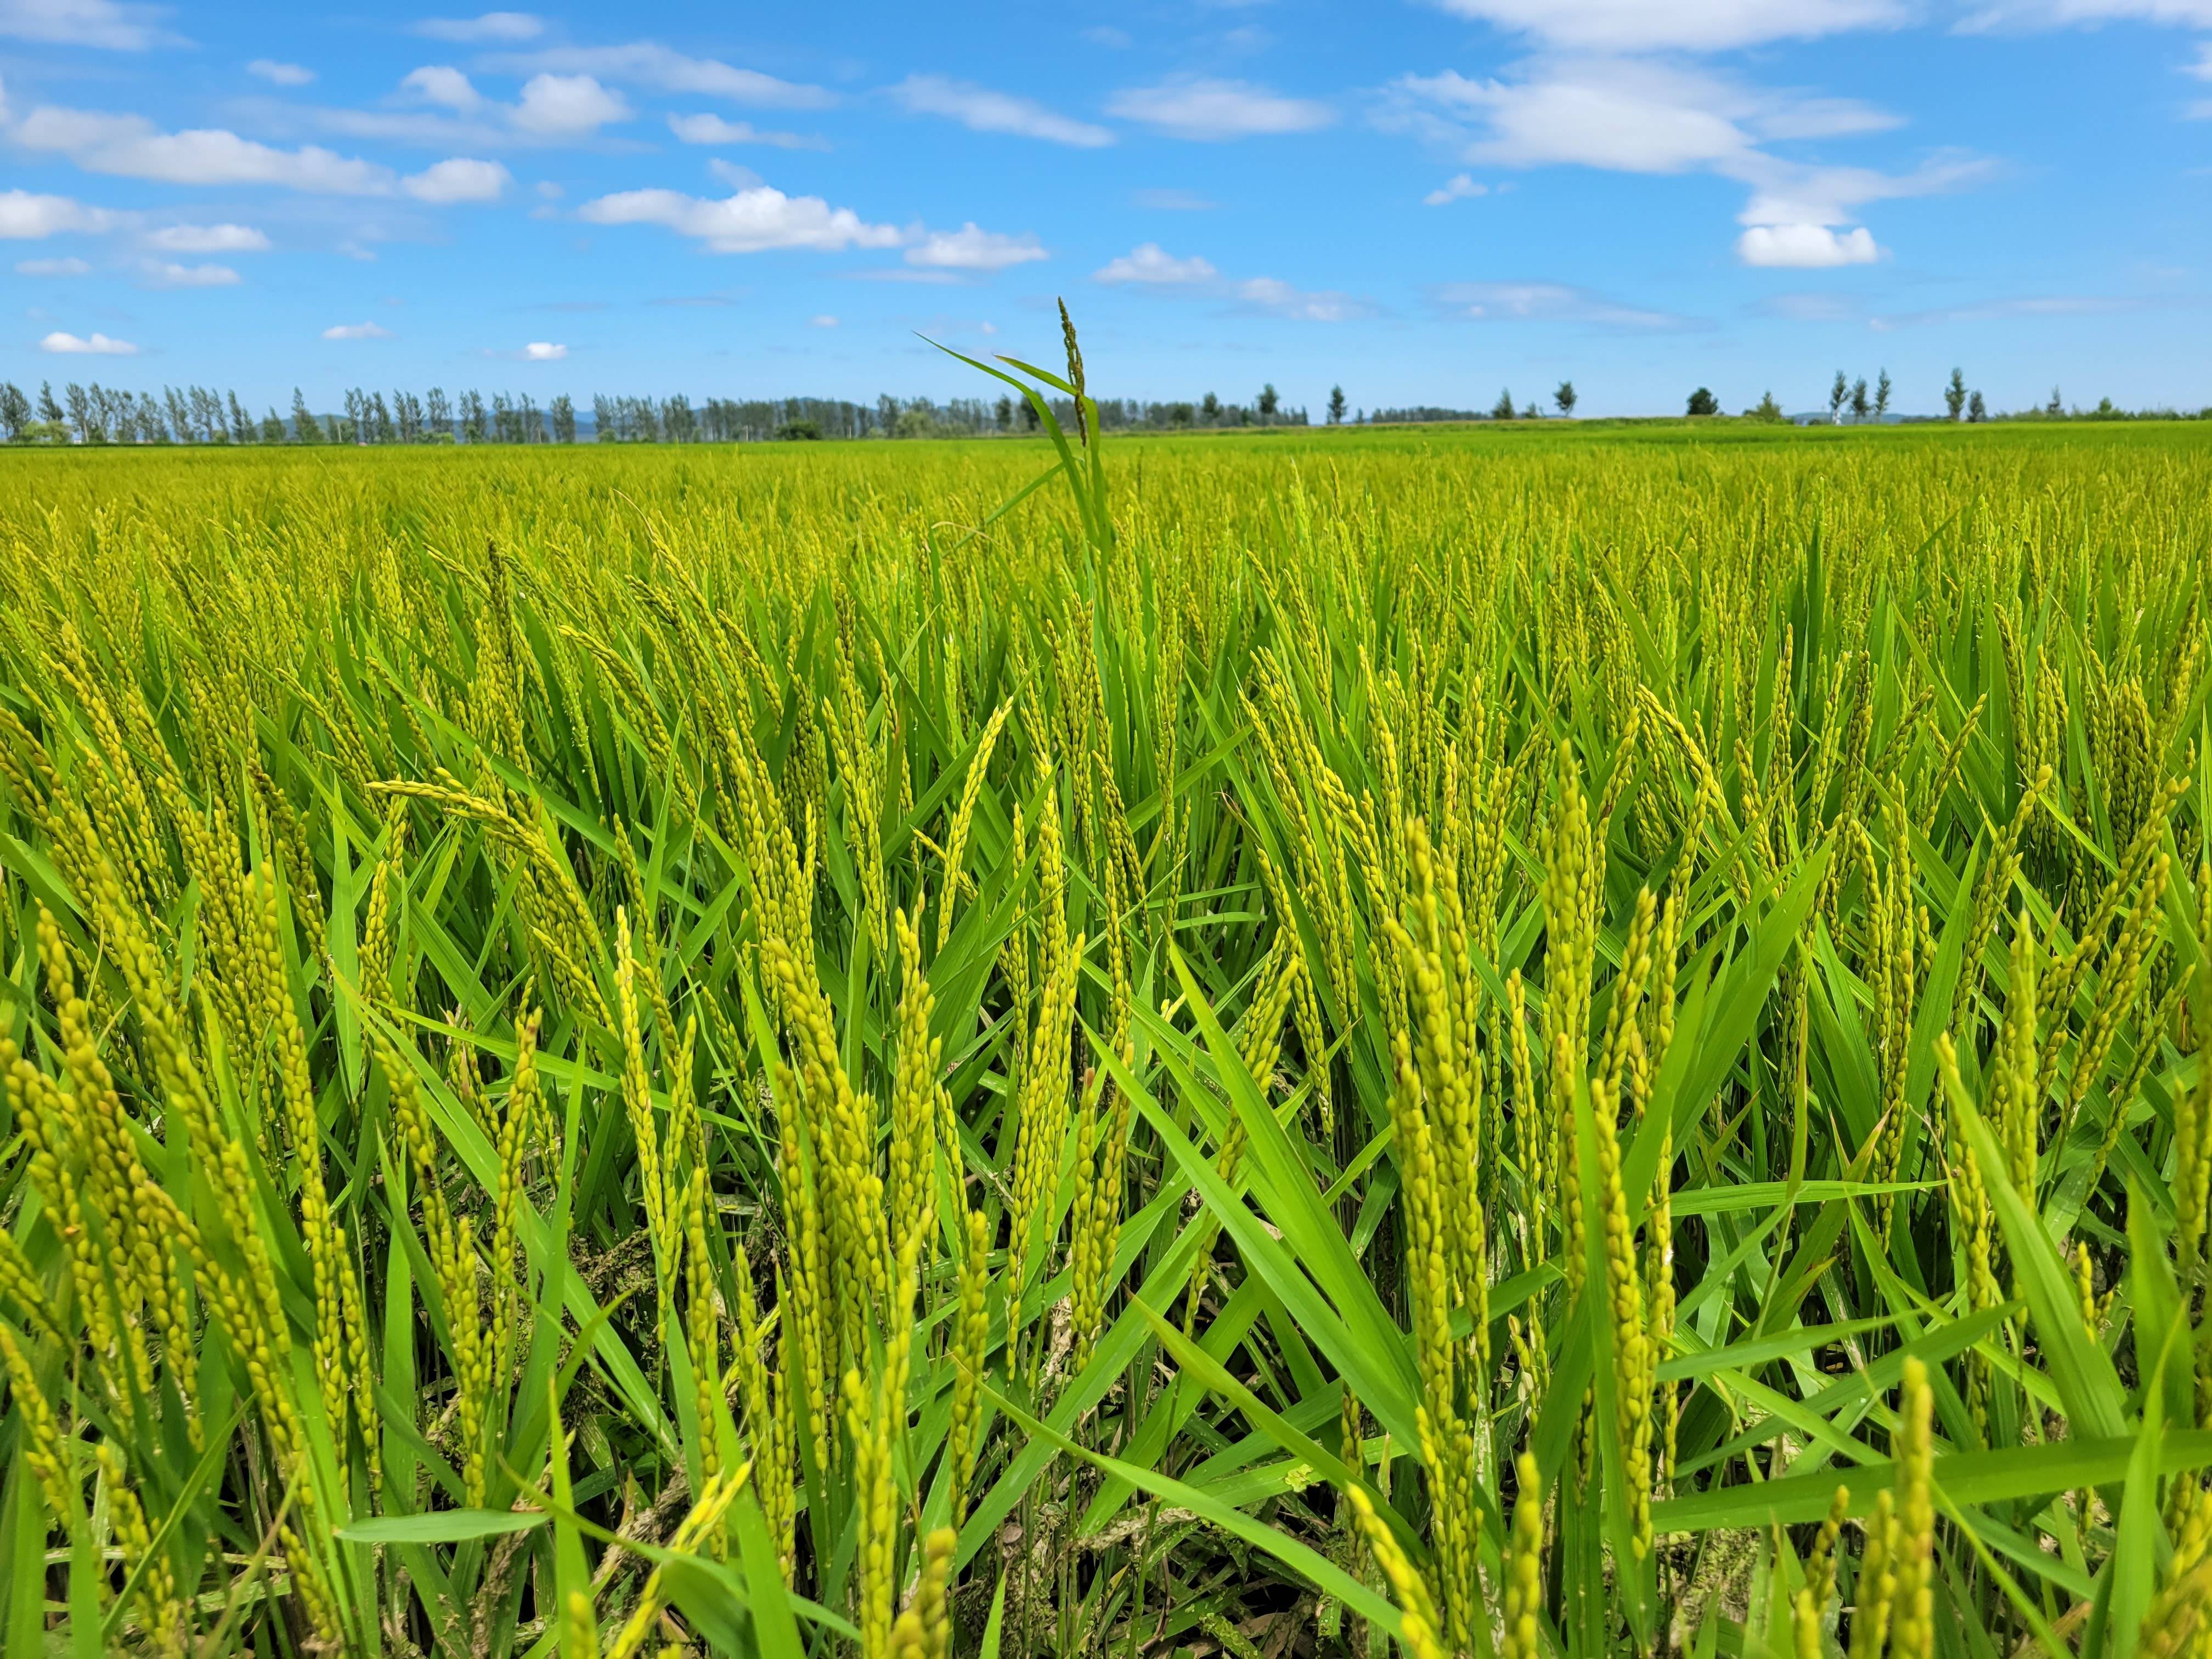 东北水稻生长周期表图片